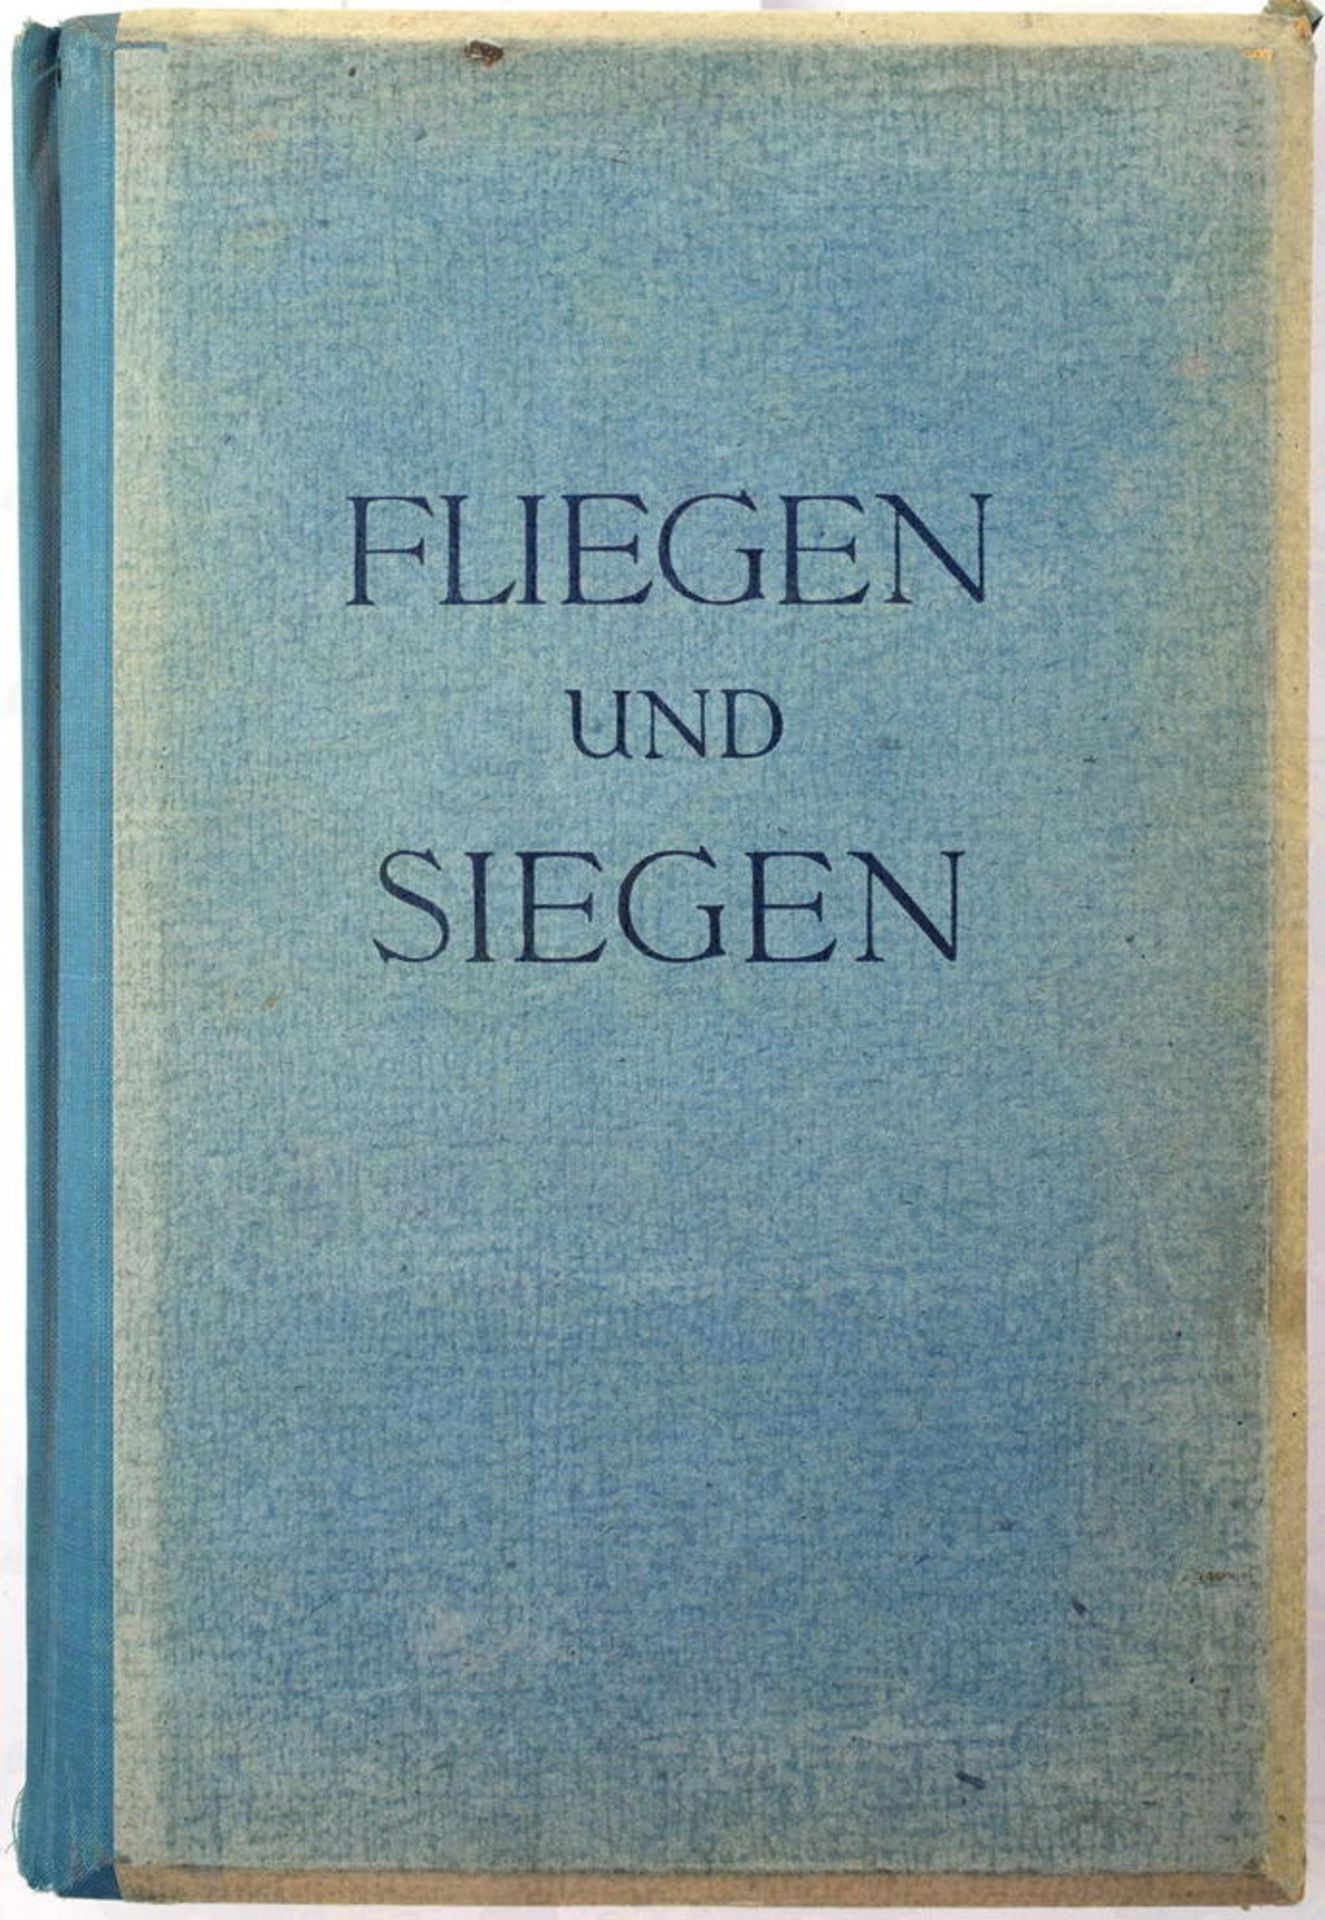 FLIEGEN UND SIEGEN, „Ein Raumbildwerk von unserer Luftwaffe“, Raumbild-Verlag Otto Schönstein